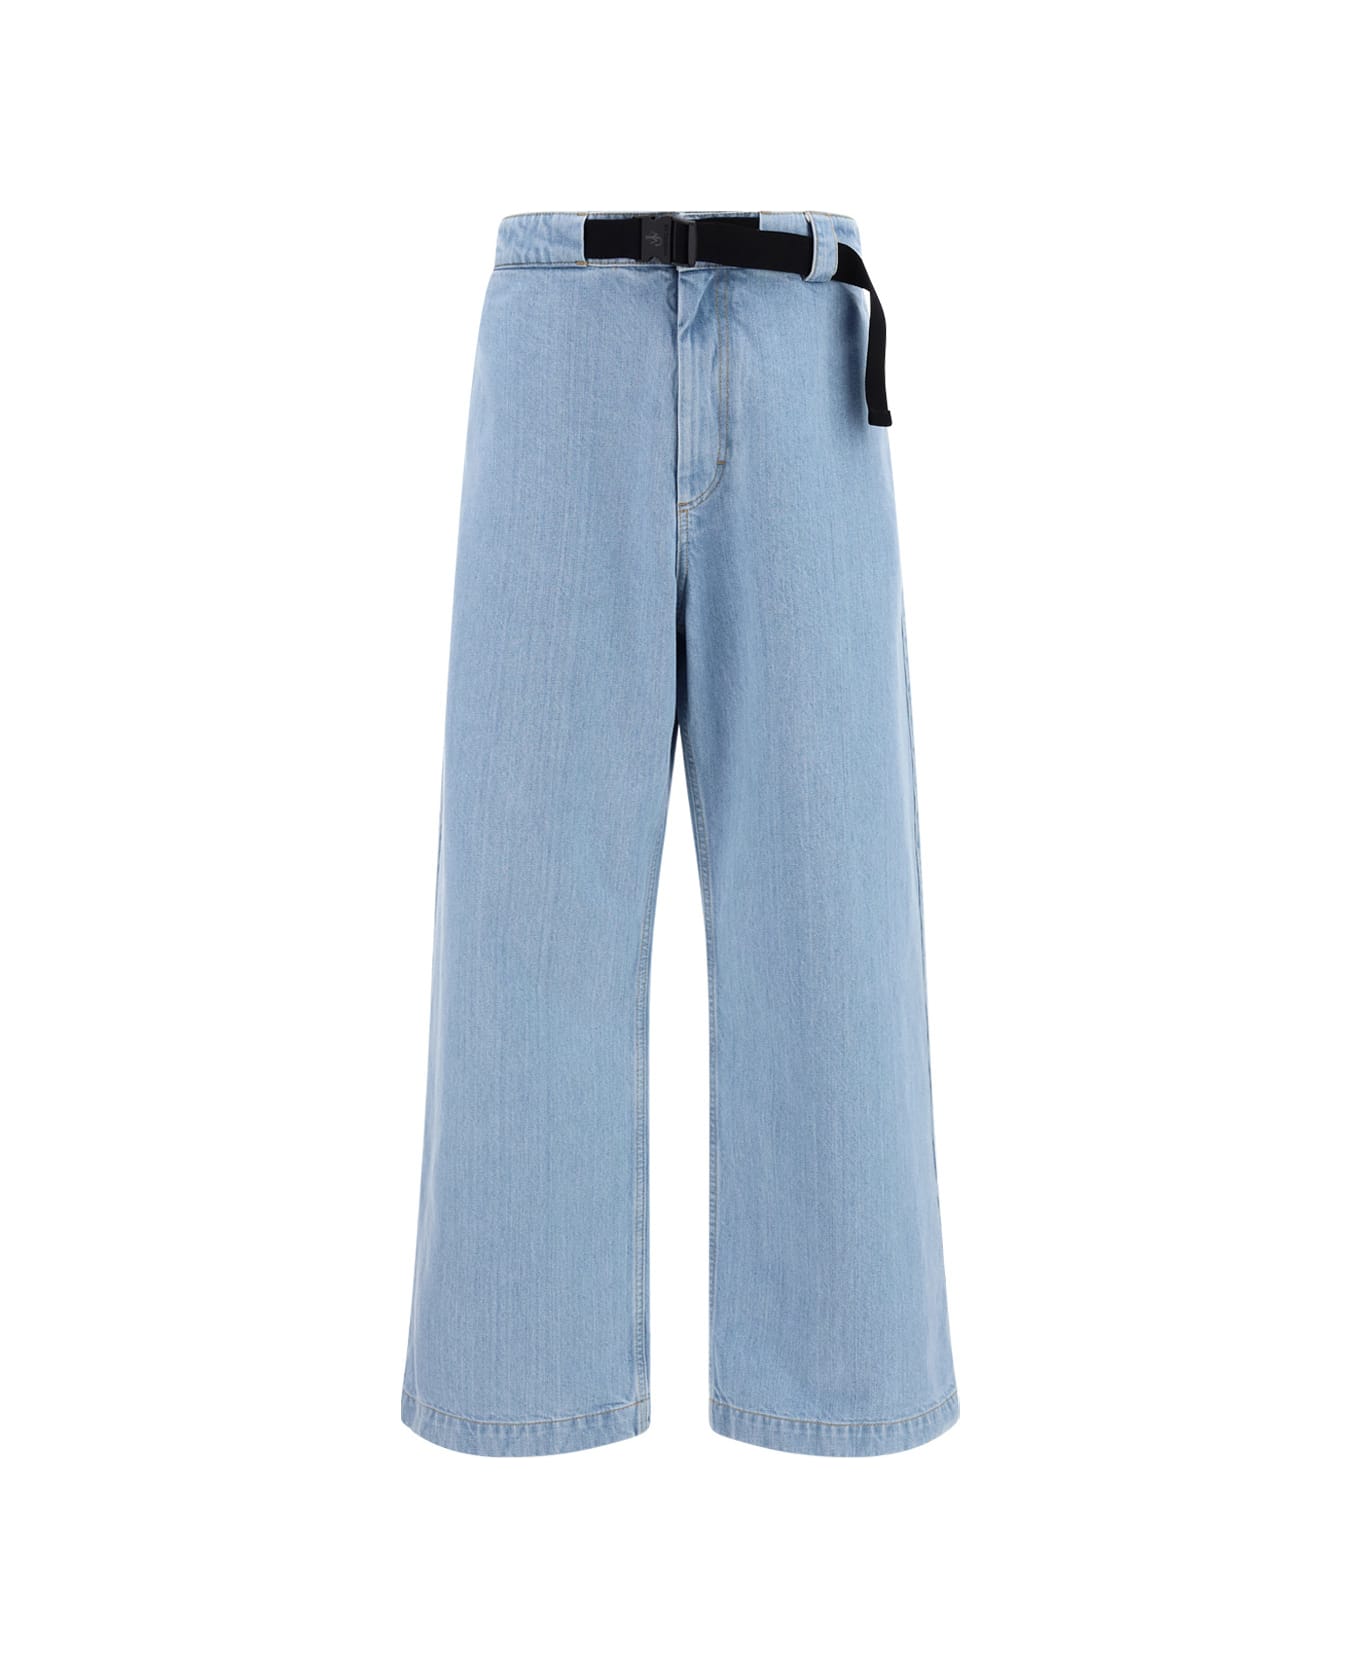 Moncler Genius Jeans - Azzurro